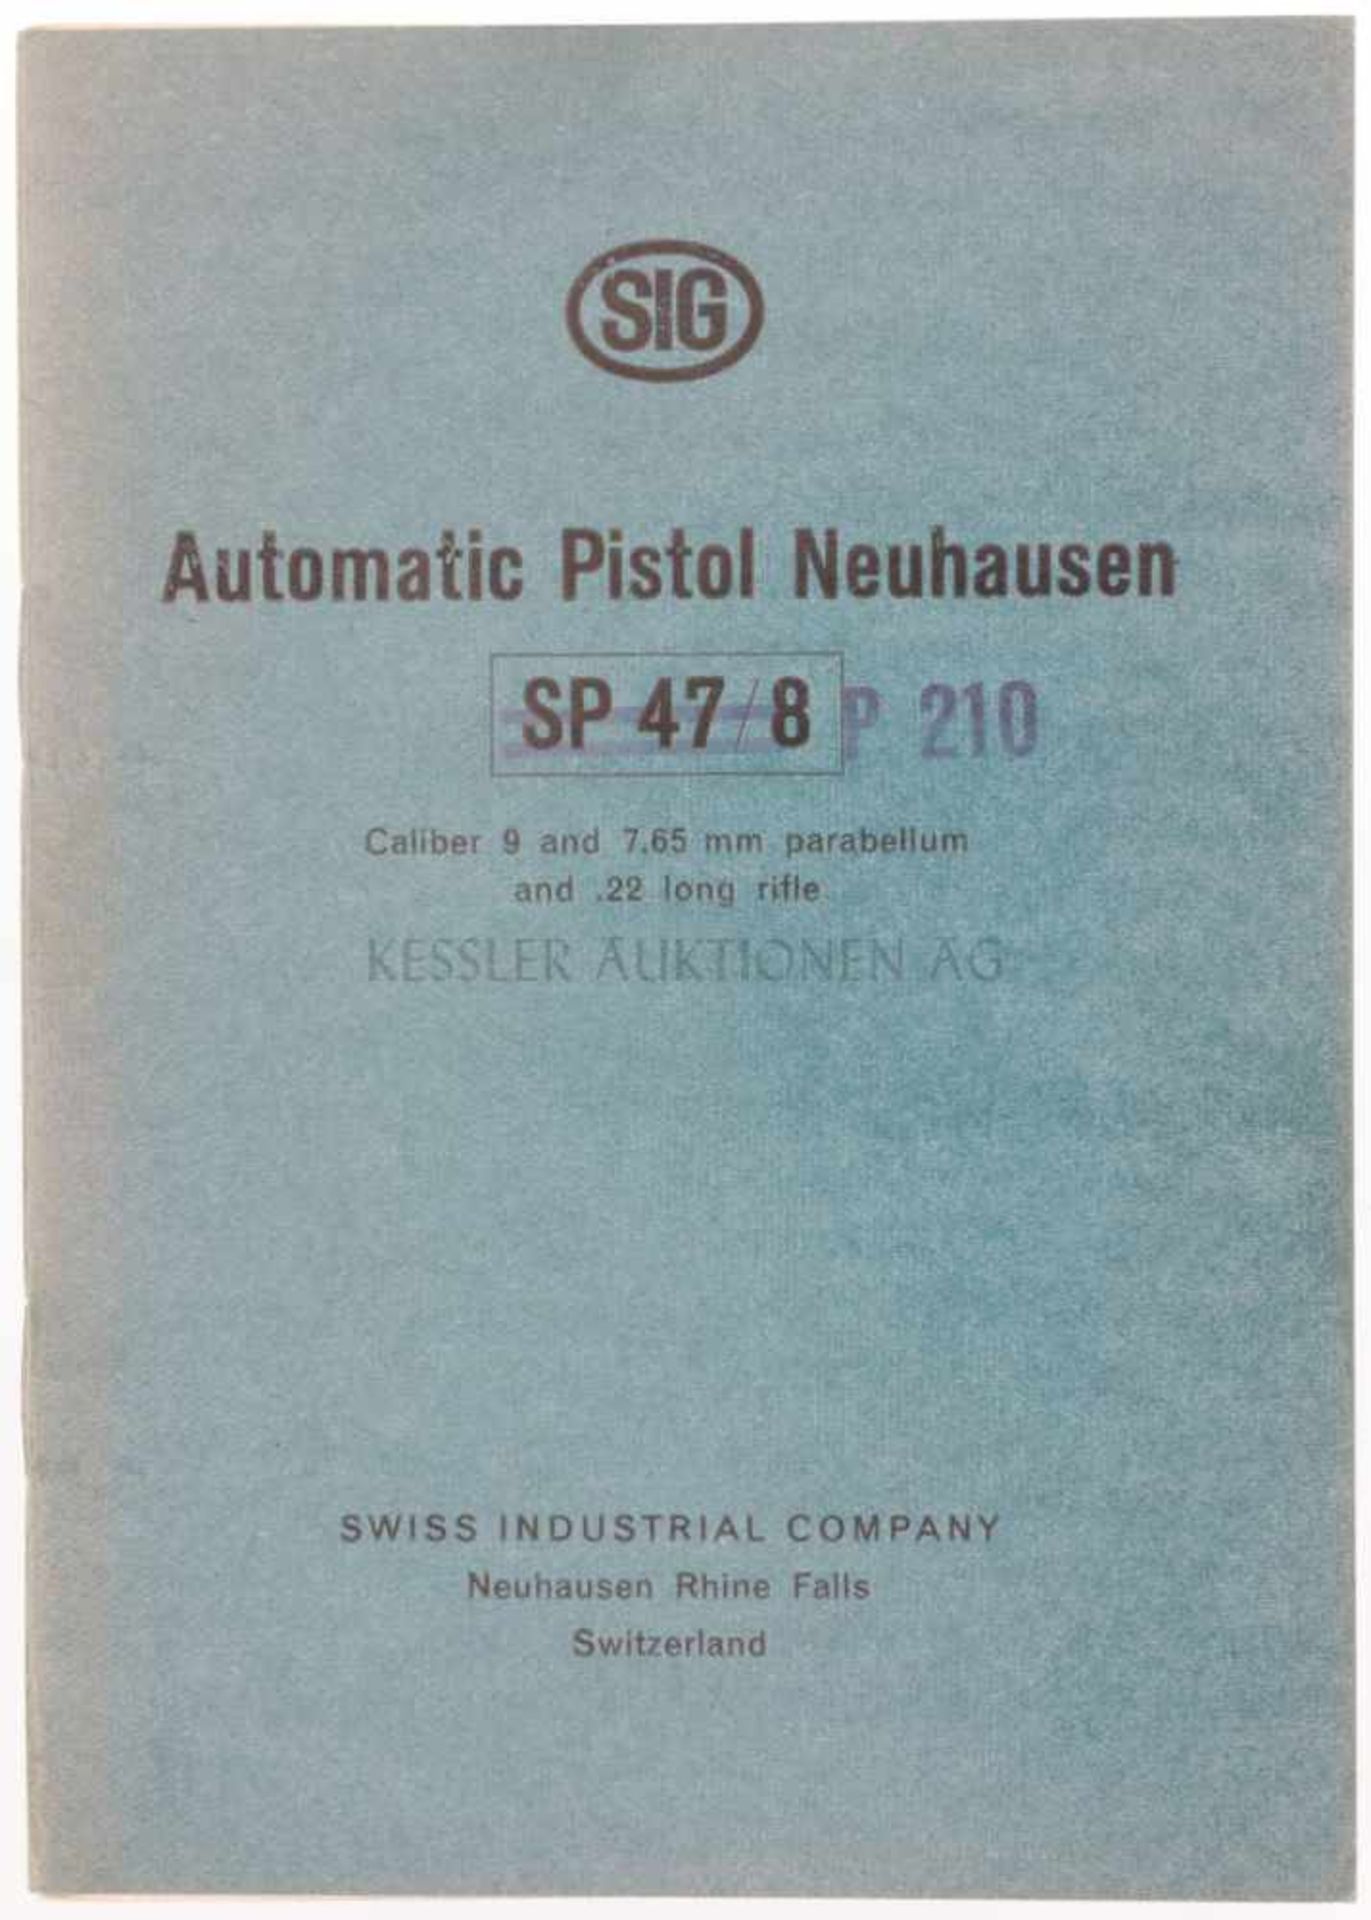 Reglement "Automatic Pistol Neuhausen SP47/8 P210" 24-seitige Anleitung in englischer Sprache zur